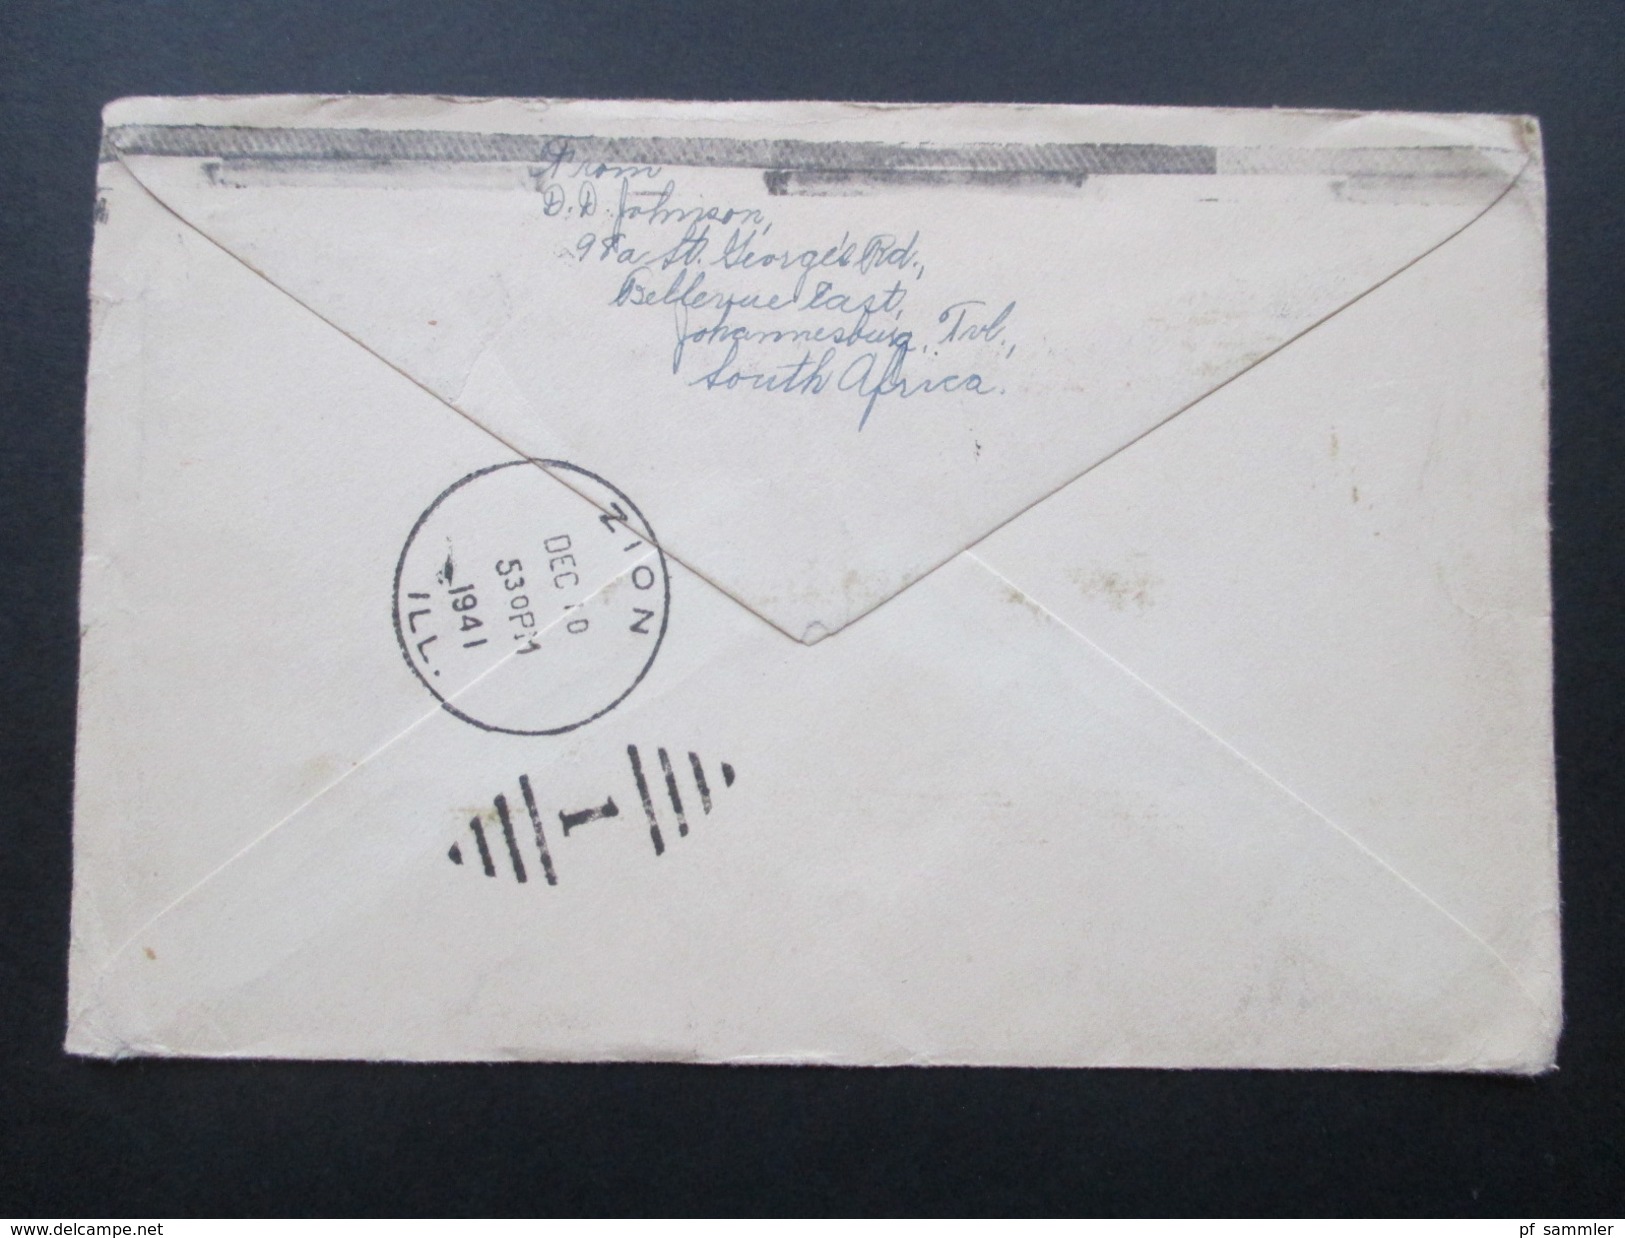 Suid-Afrika 1941 Brief Von Johannesburg - Zion Ill. USA Forwarded To 1004 Nevada - Cartas